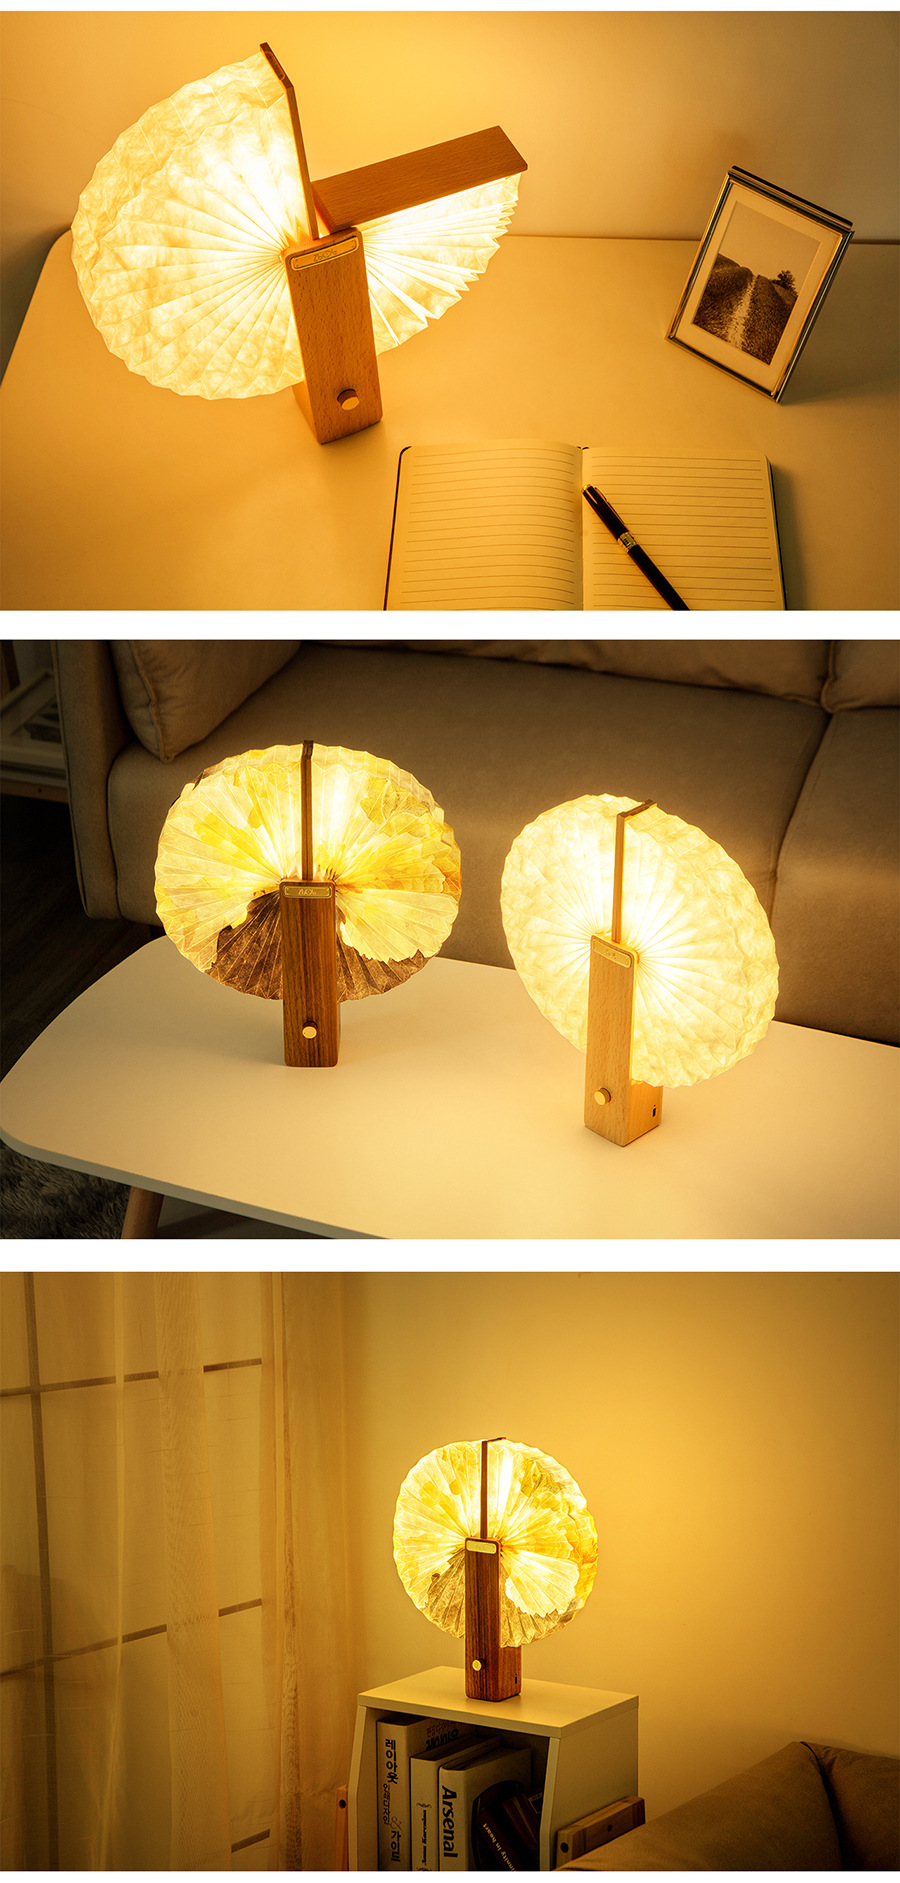 臺燈創意裝飾節日禮物復古簡約臥室床頭氛圍燈實木創意桌面臺燈